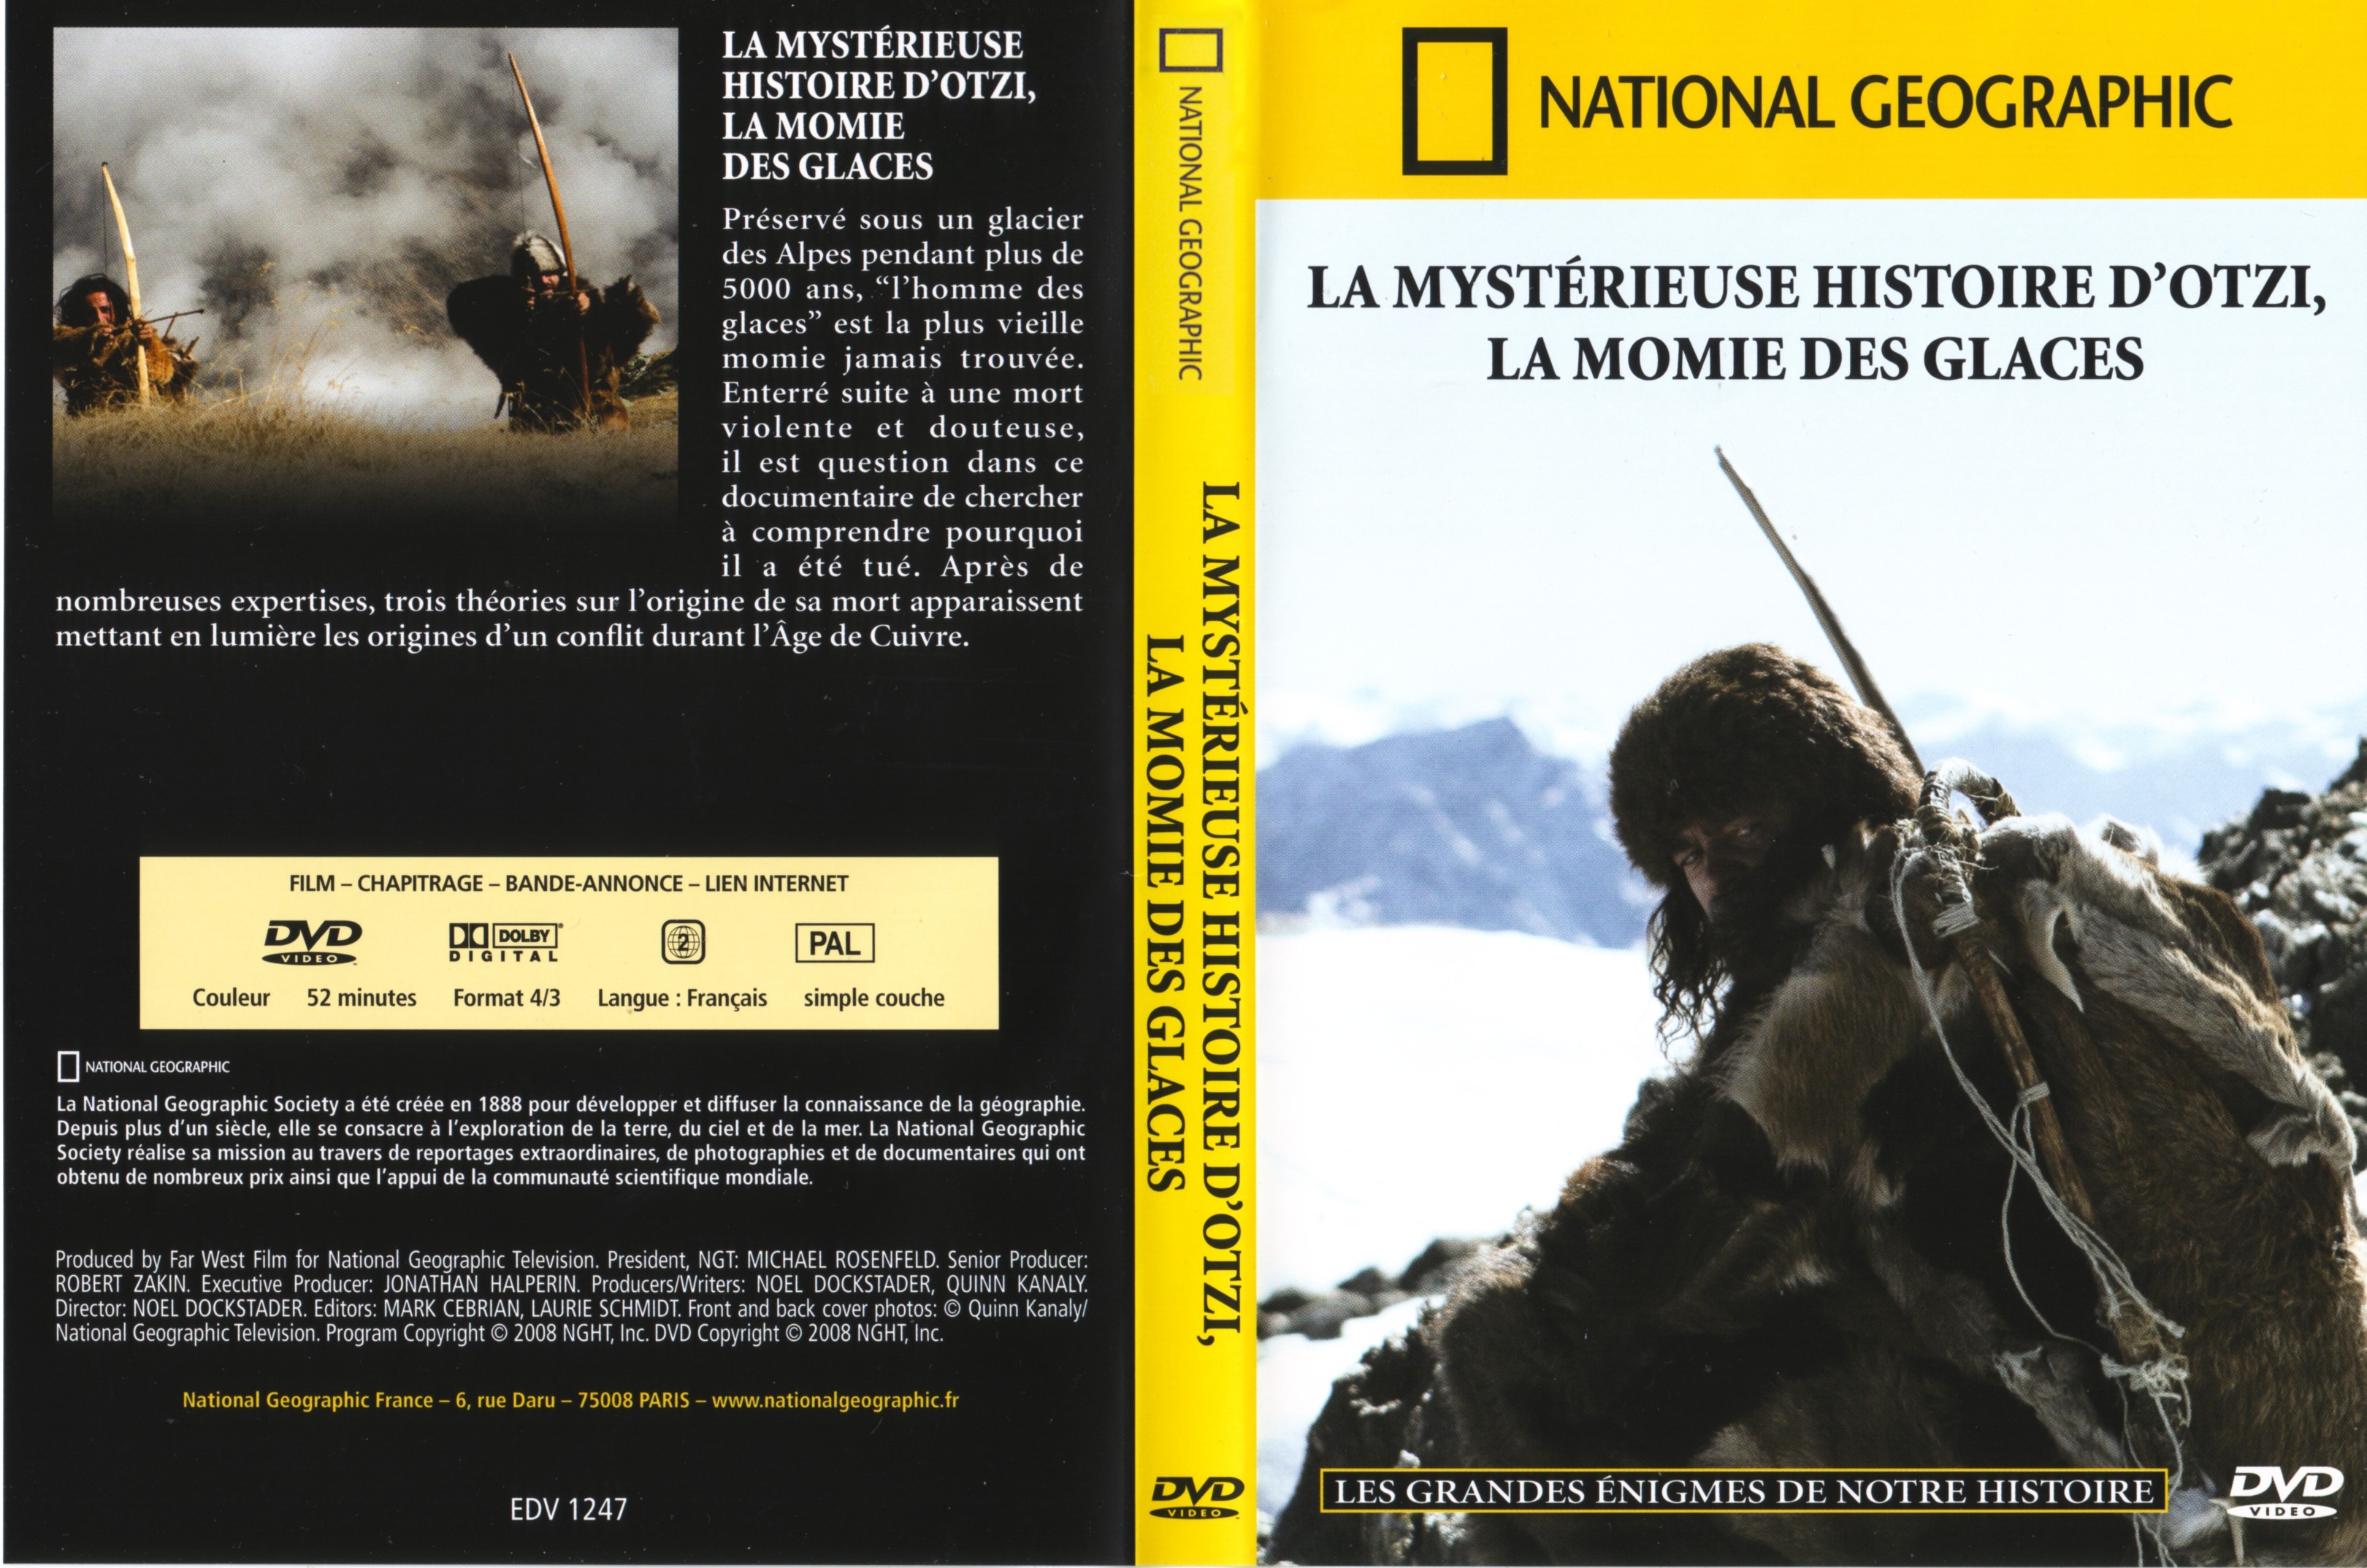 Jaquette DVD National Geographic - La mystrieuse histoire d